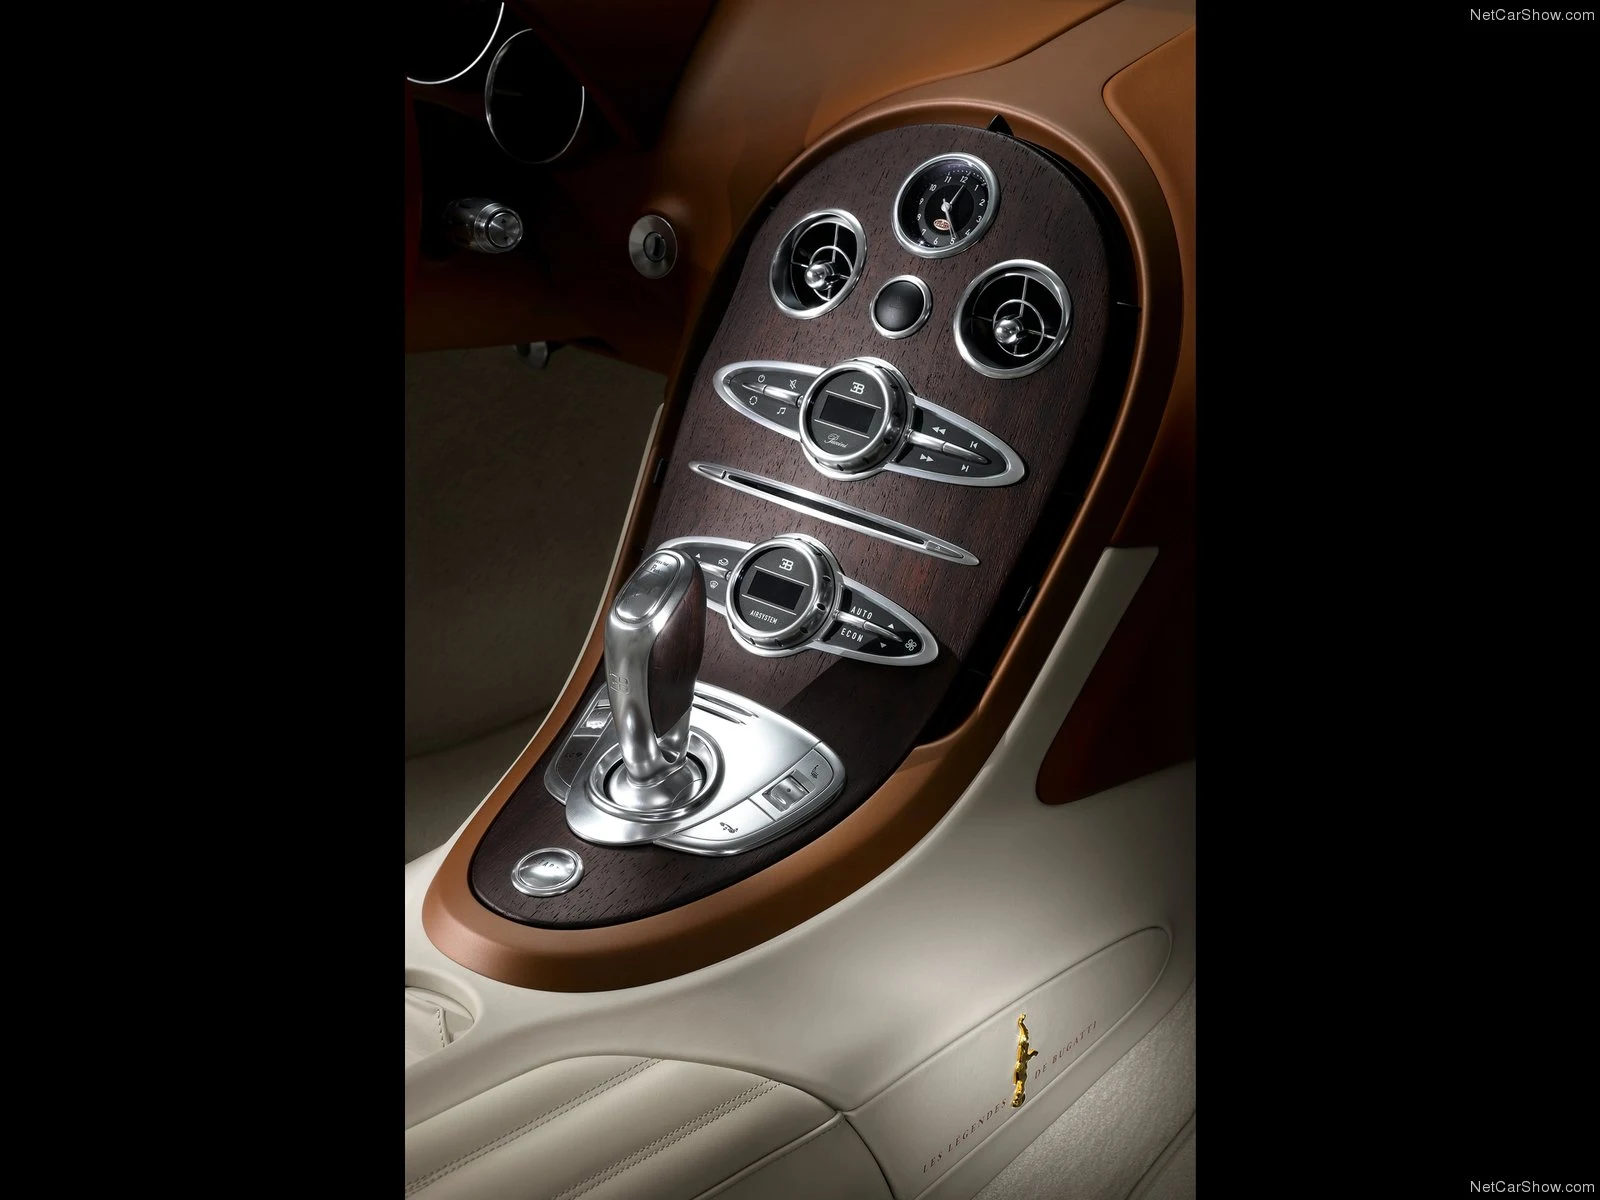 Hình ảnh siêu xe Bugatti Veyron Black Bess 2014 & nội ngoại thất